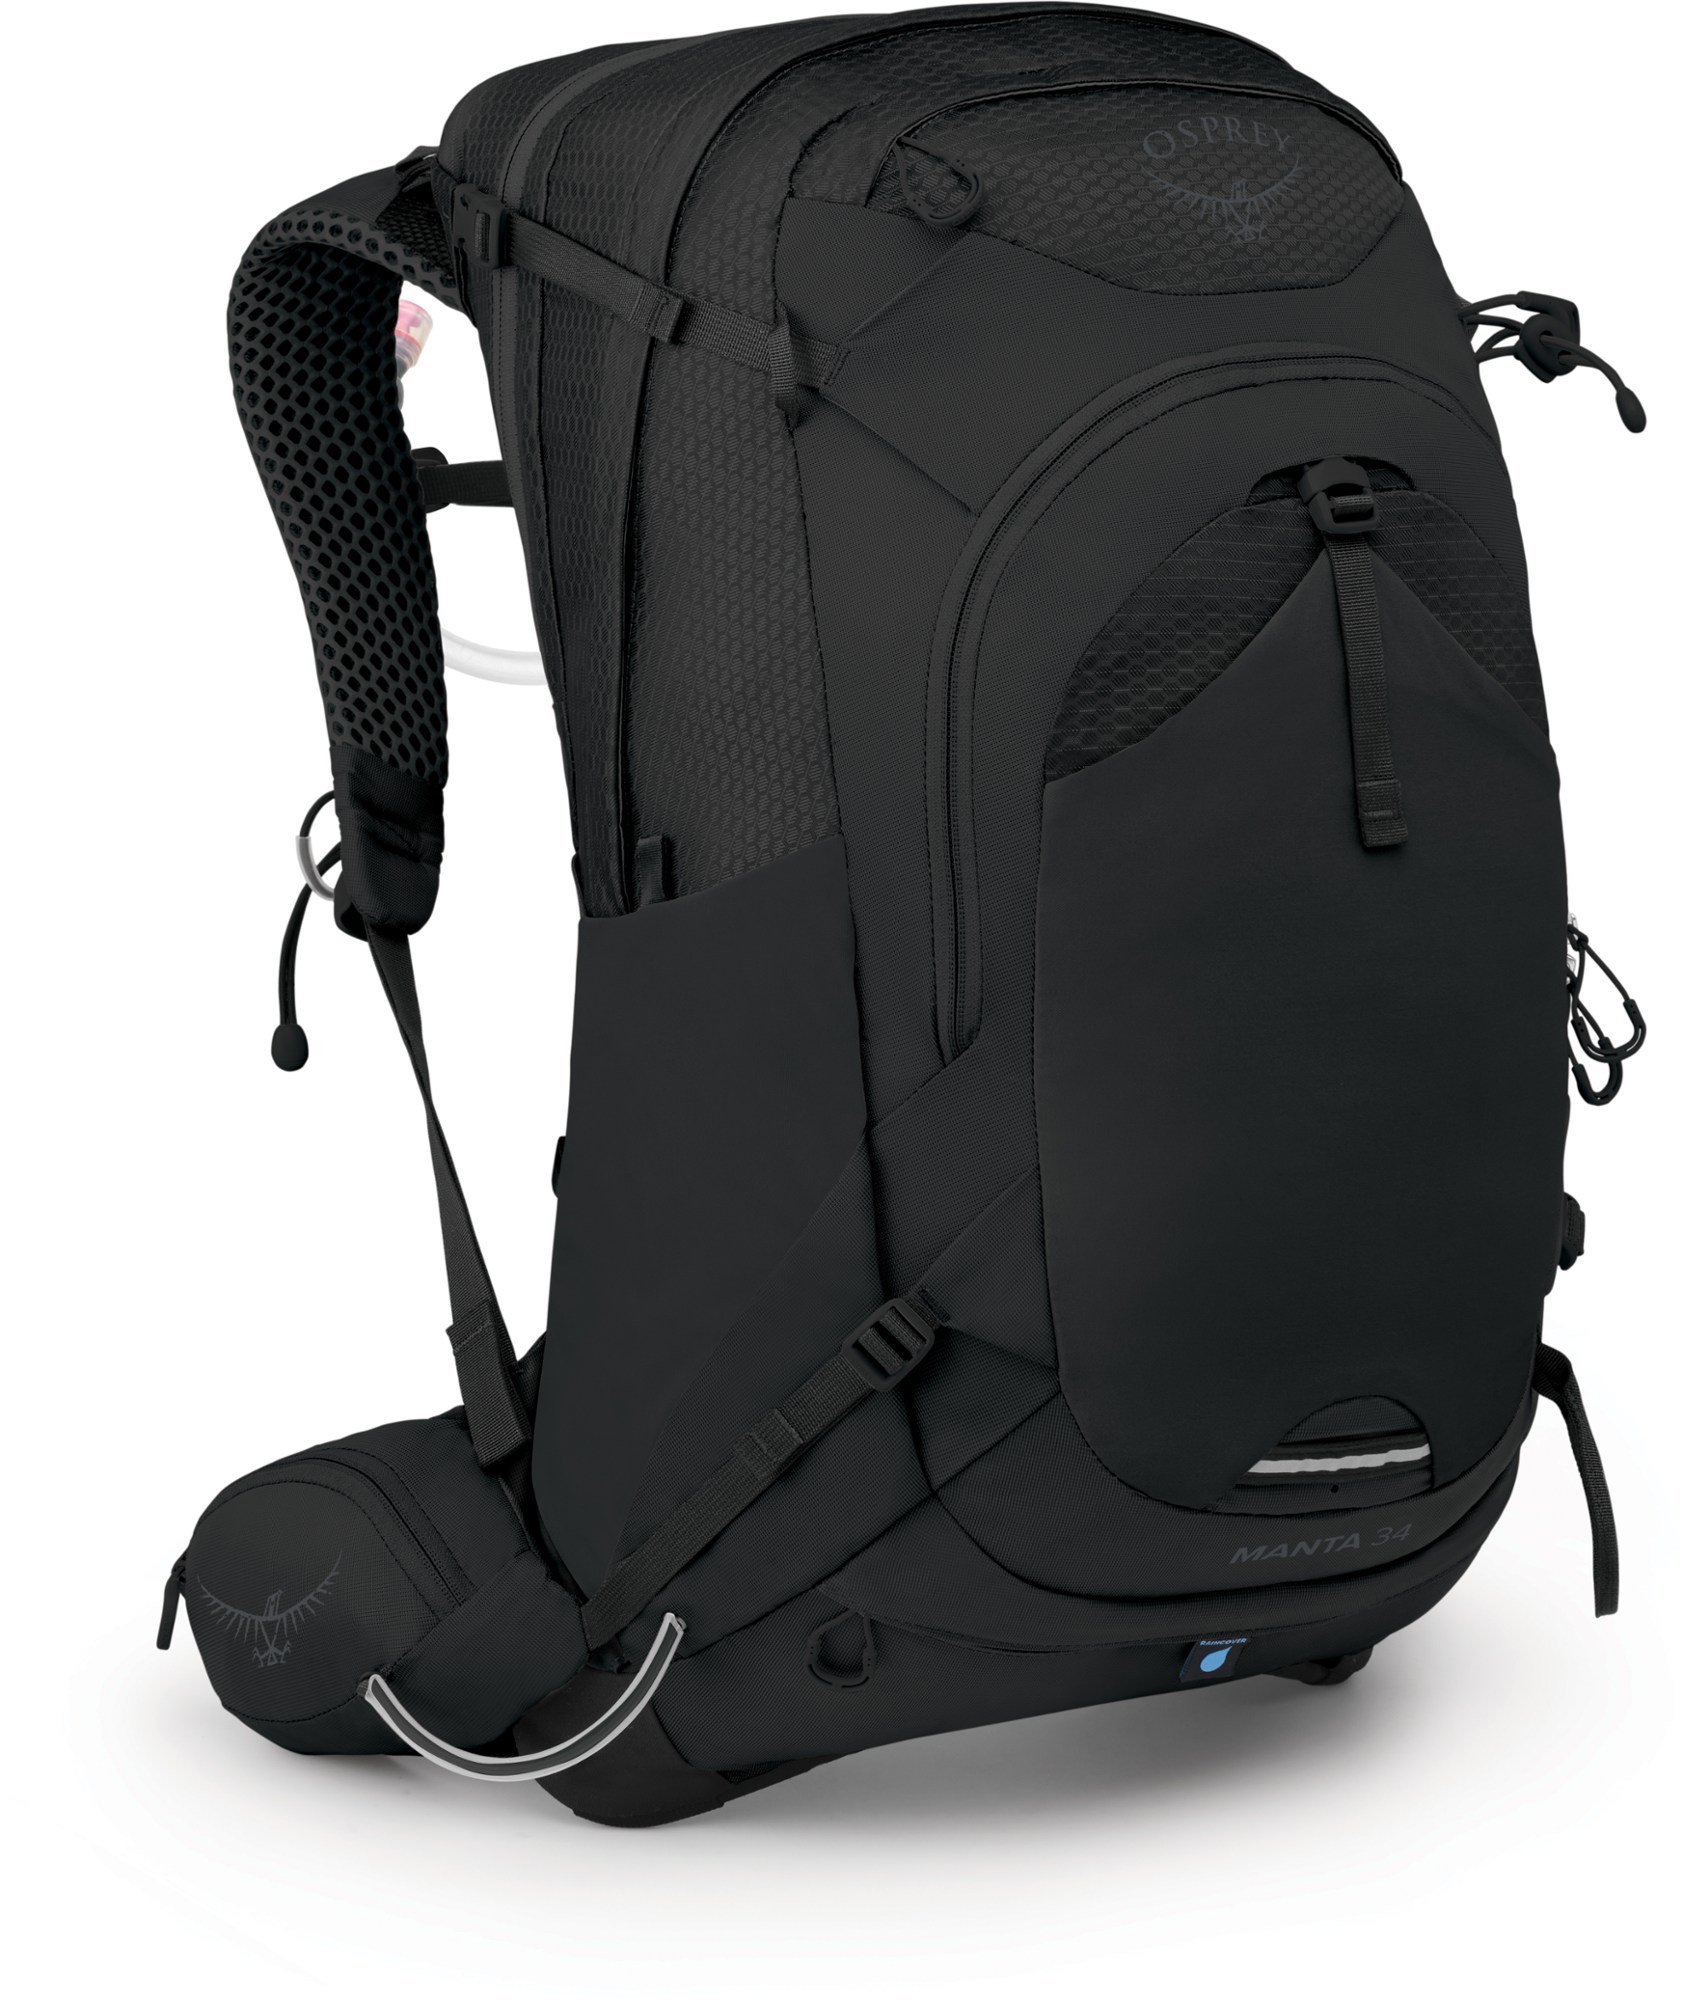 Гидратационный пакет Manta 34 — мужской Osprey, черный тактический гидратационный рюкзак хаки песок